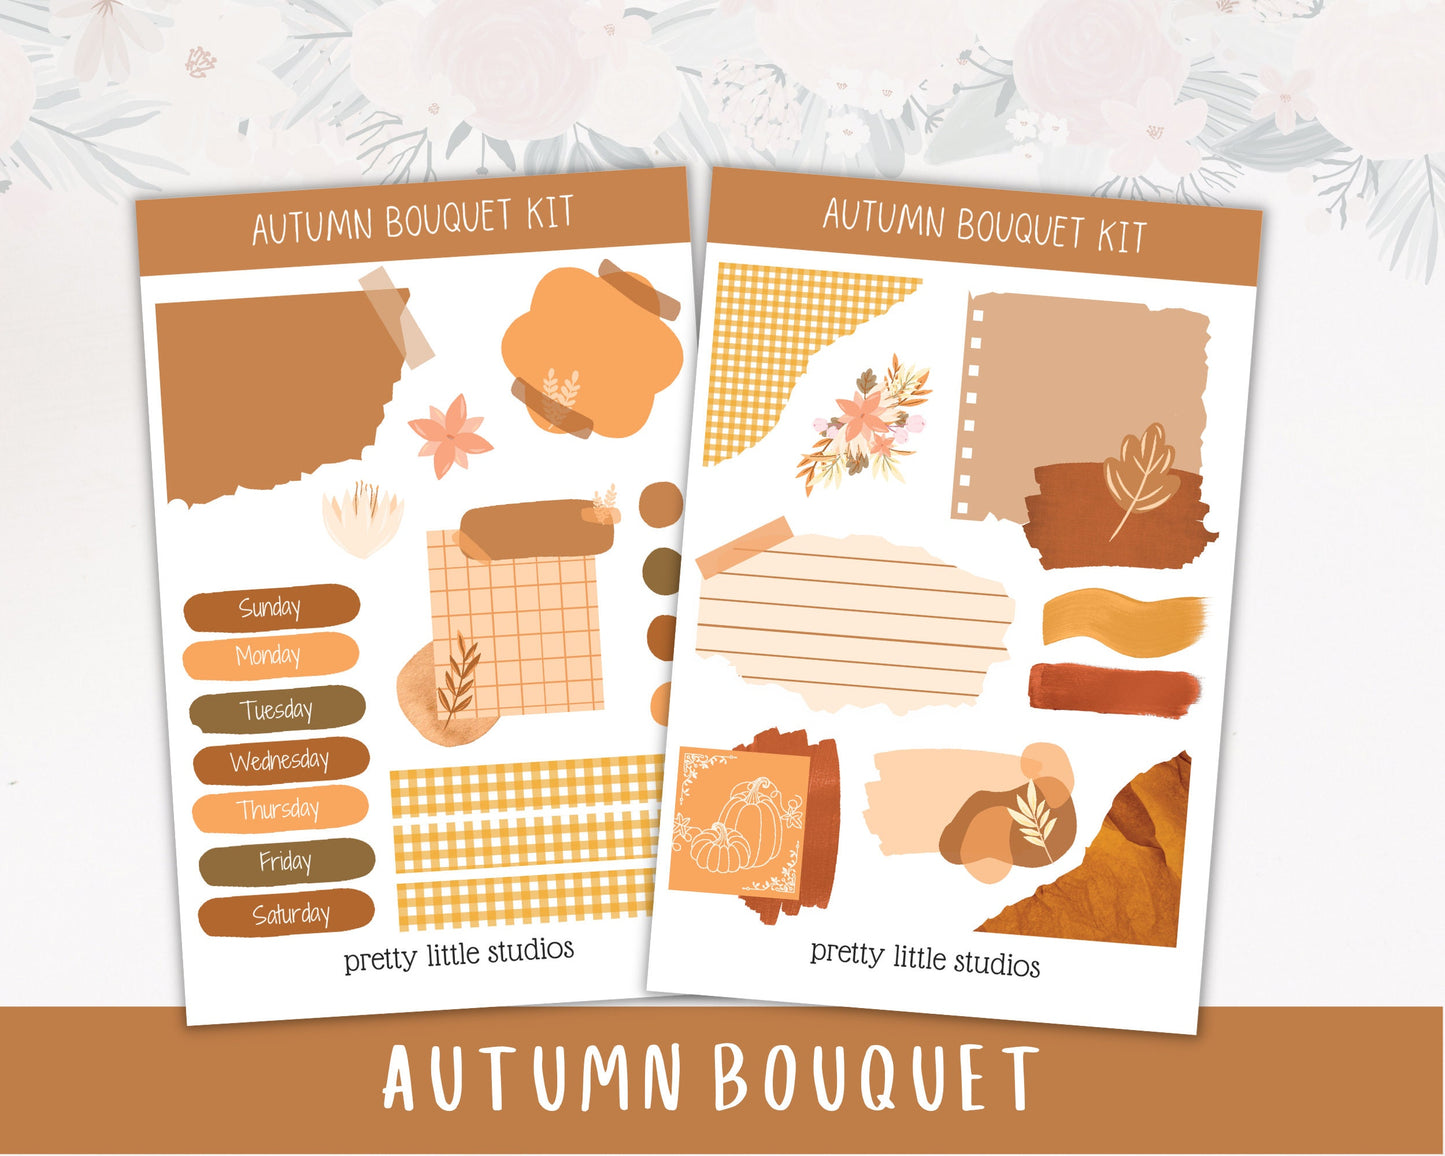 Autumn Bouquet Mini Journal Sticker Kit - Bullet Journal Sticker Kit - Planner Sticker Kit - Journaling Kit - Autumn Sticker Kit